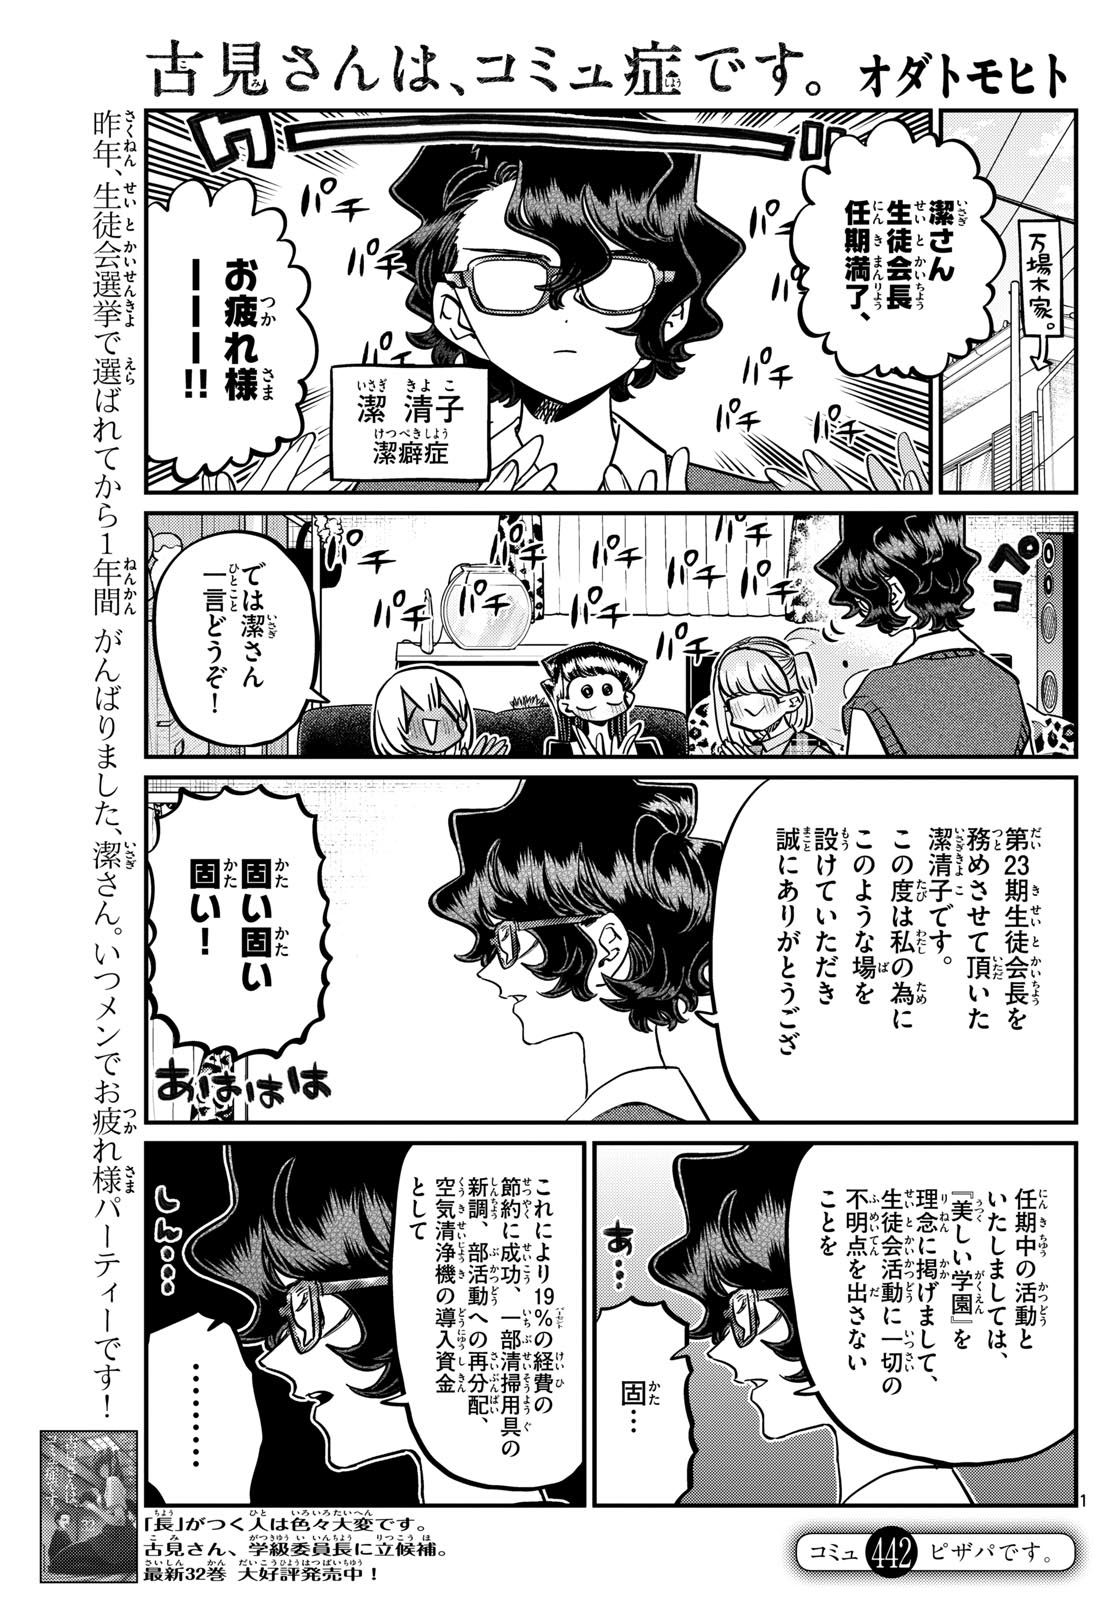 Komi-san wa Komyushou Desu - Chapter 442 - Page 1